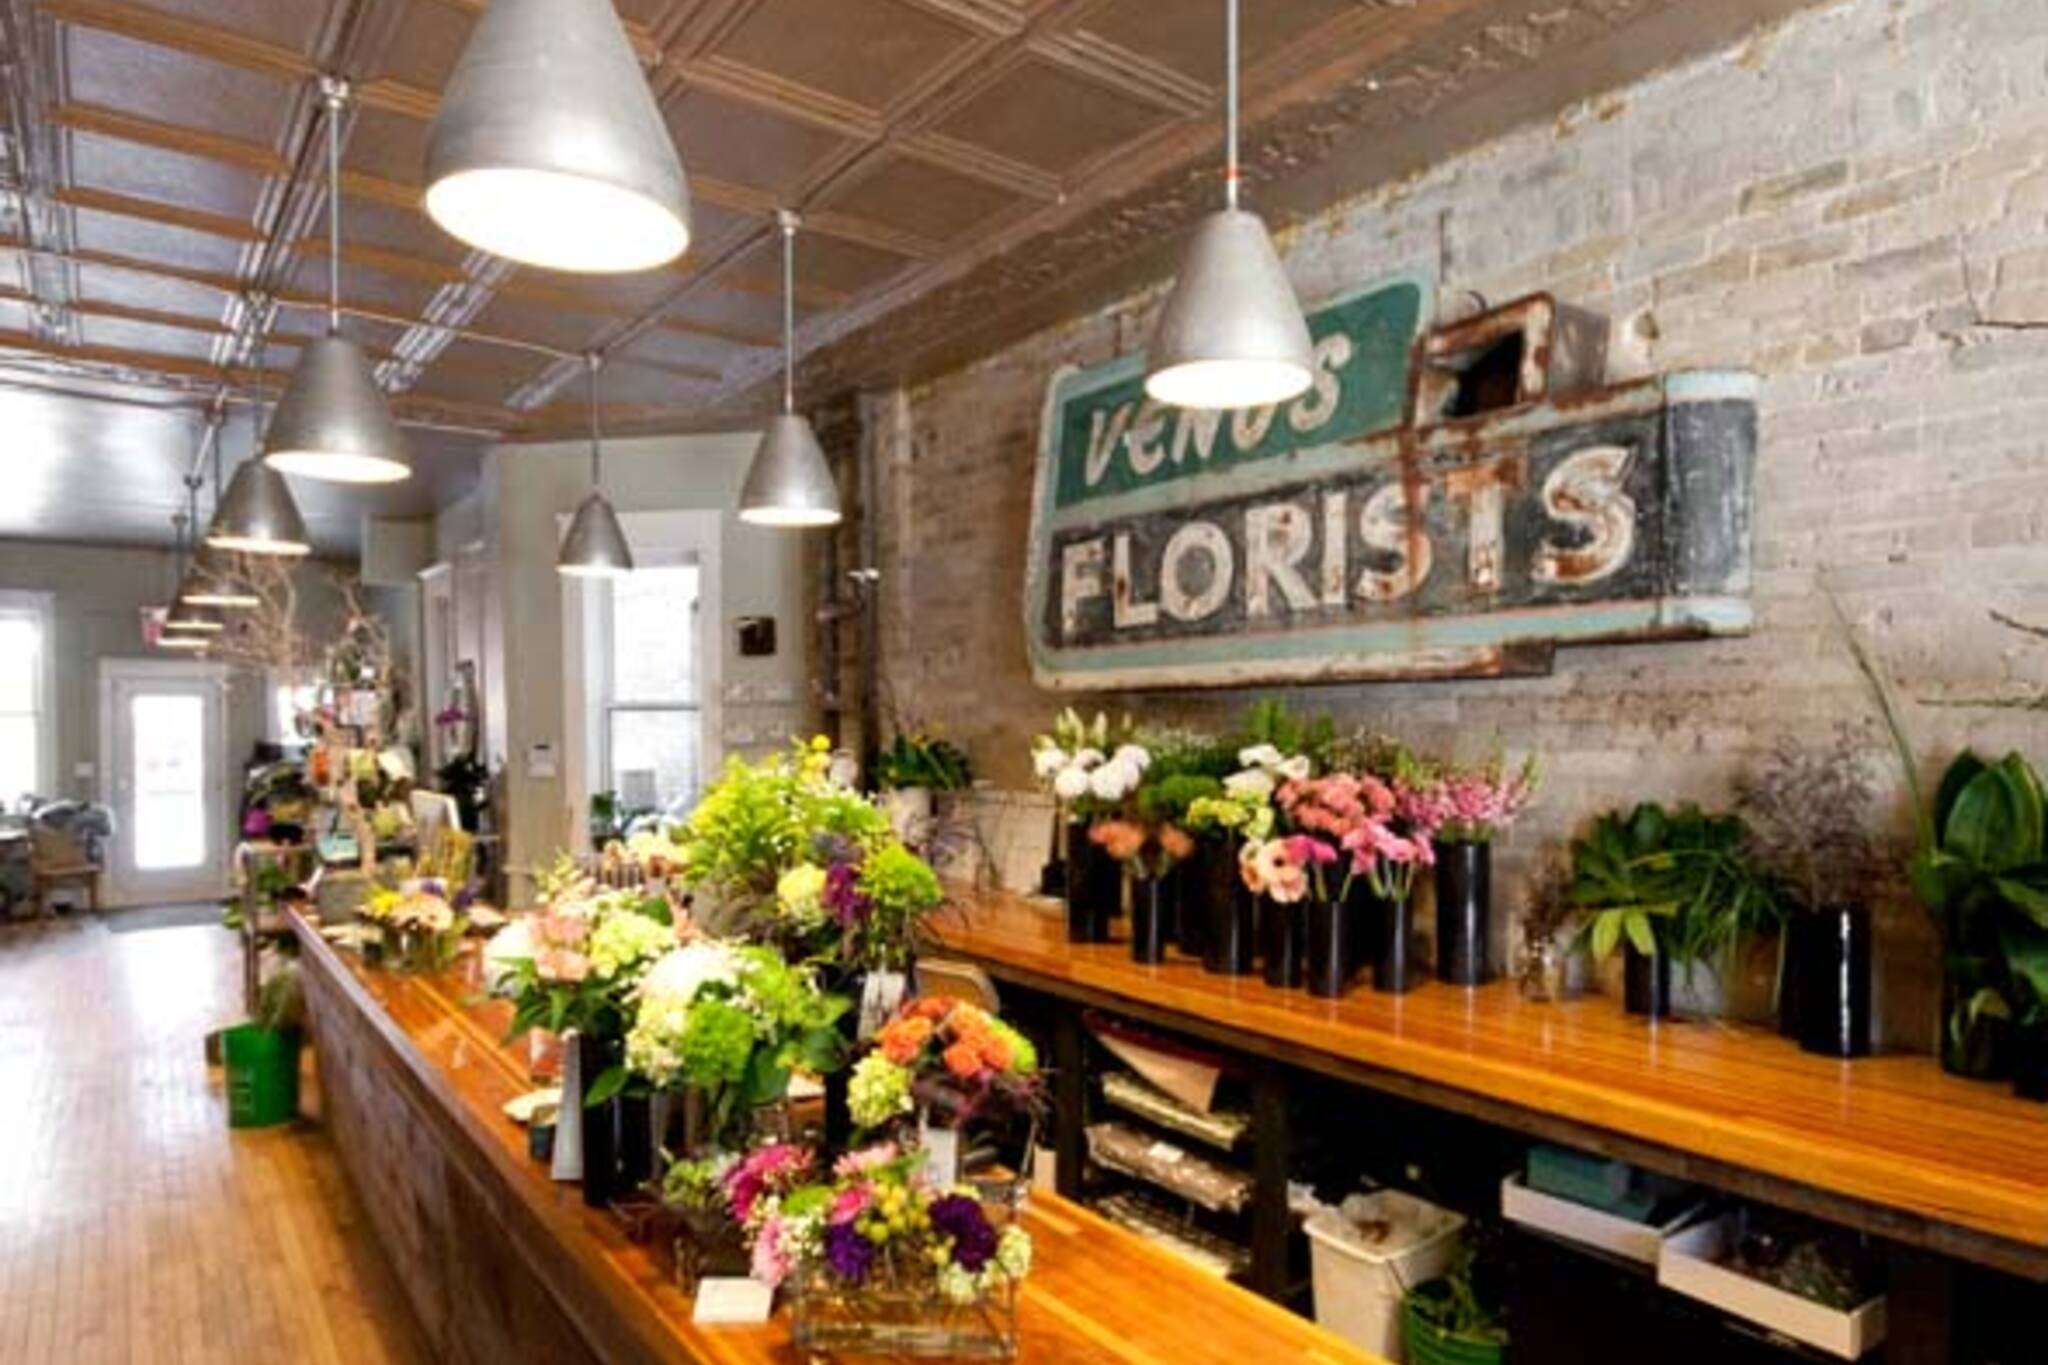 Sweetpea's - Toronto's Best Florist, Gift Certificates